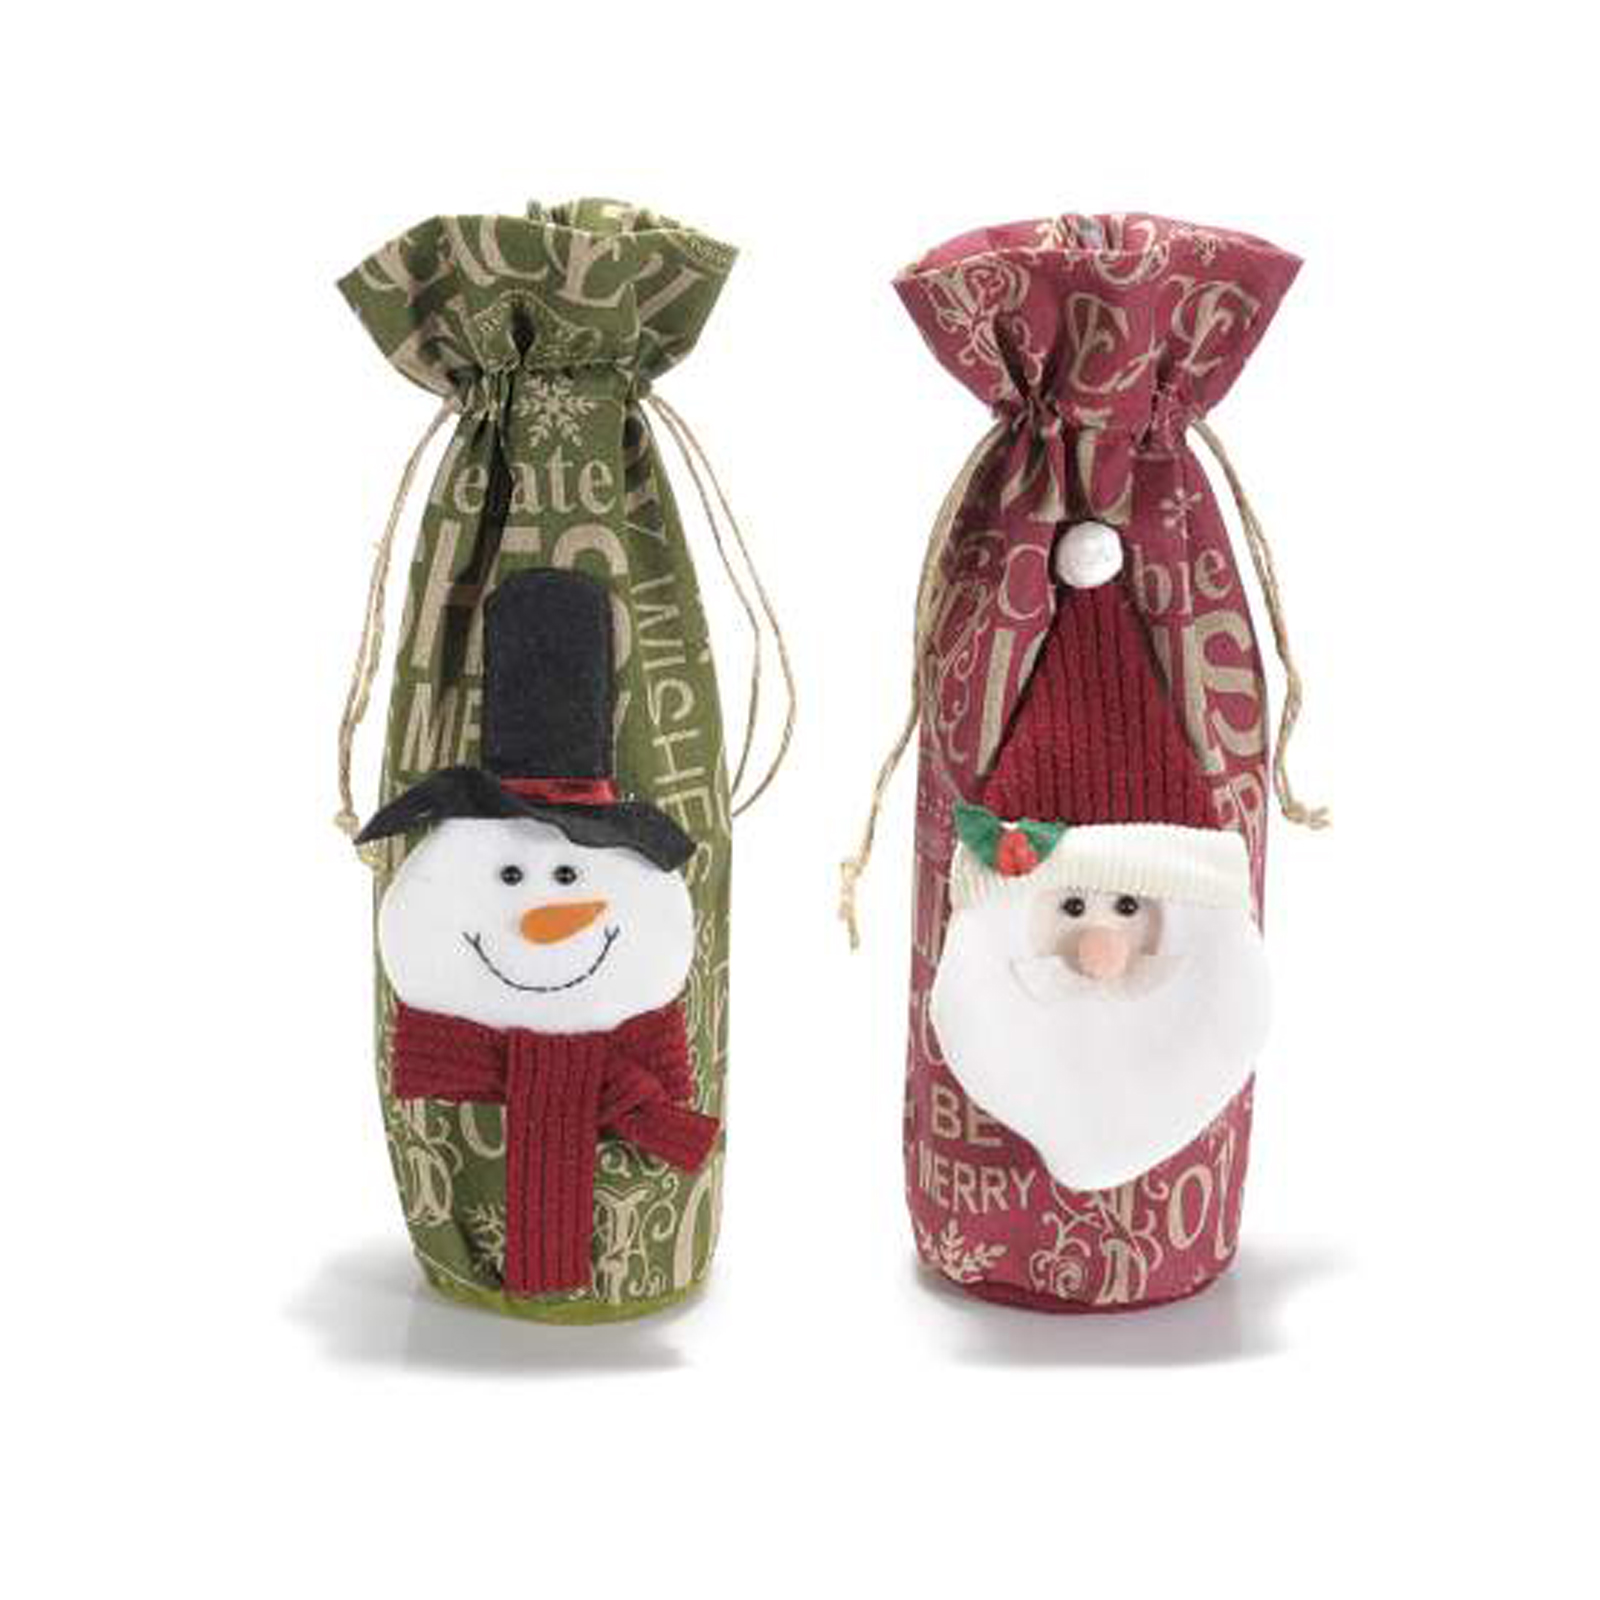 8Pz. Sacchetti portabottiglia in stoffa con decorazione natalizia: Ø 10cmx32 H (al tirante26)